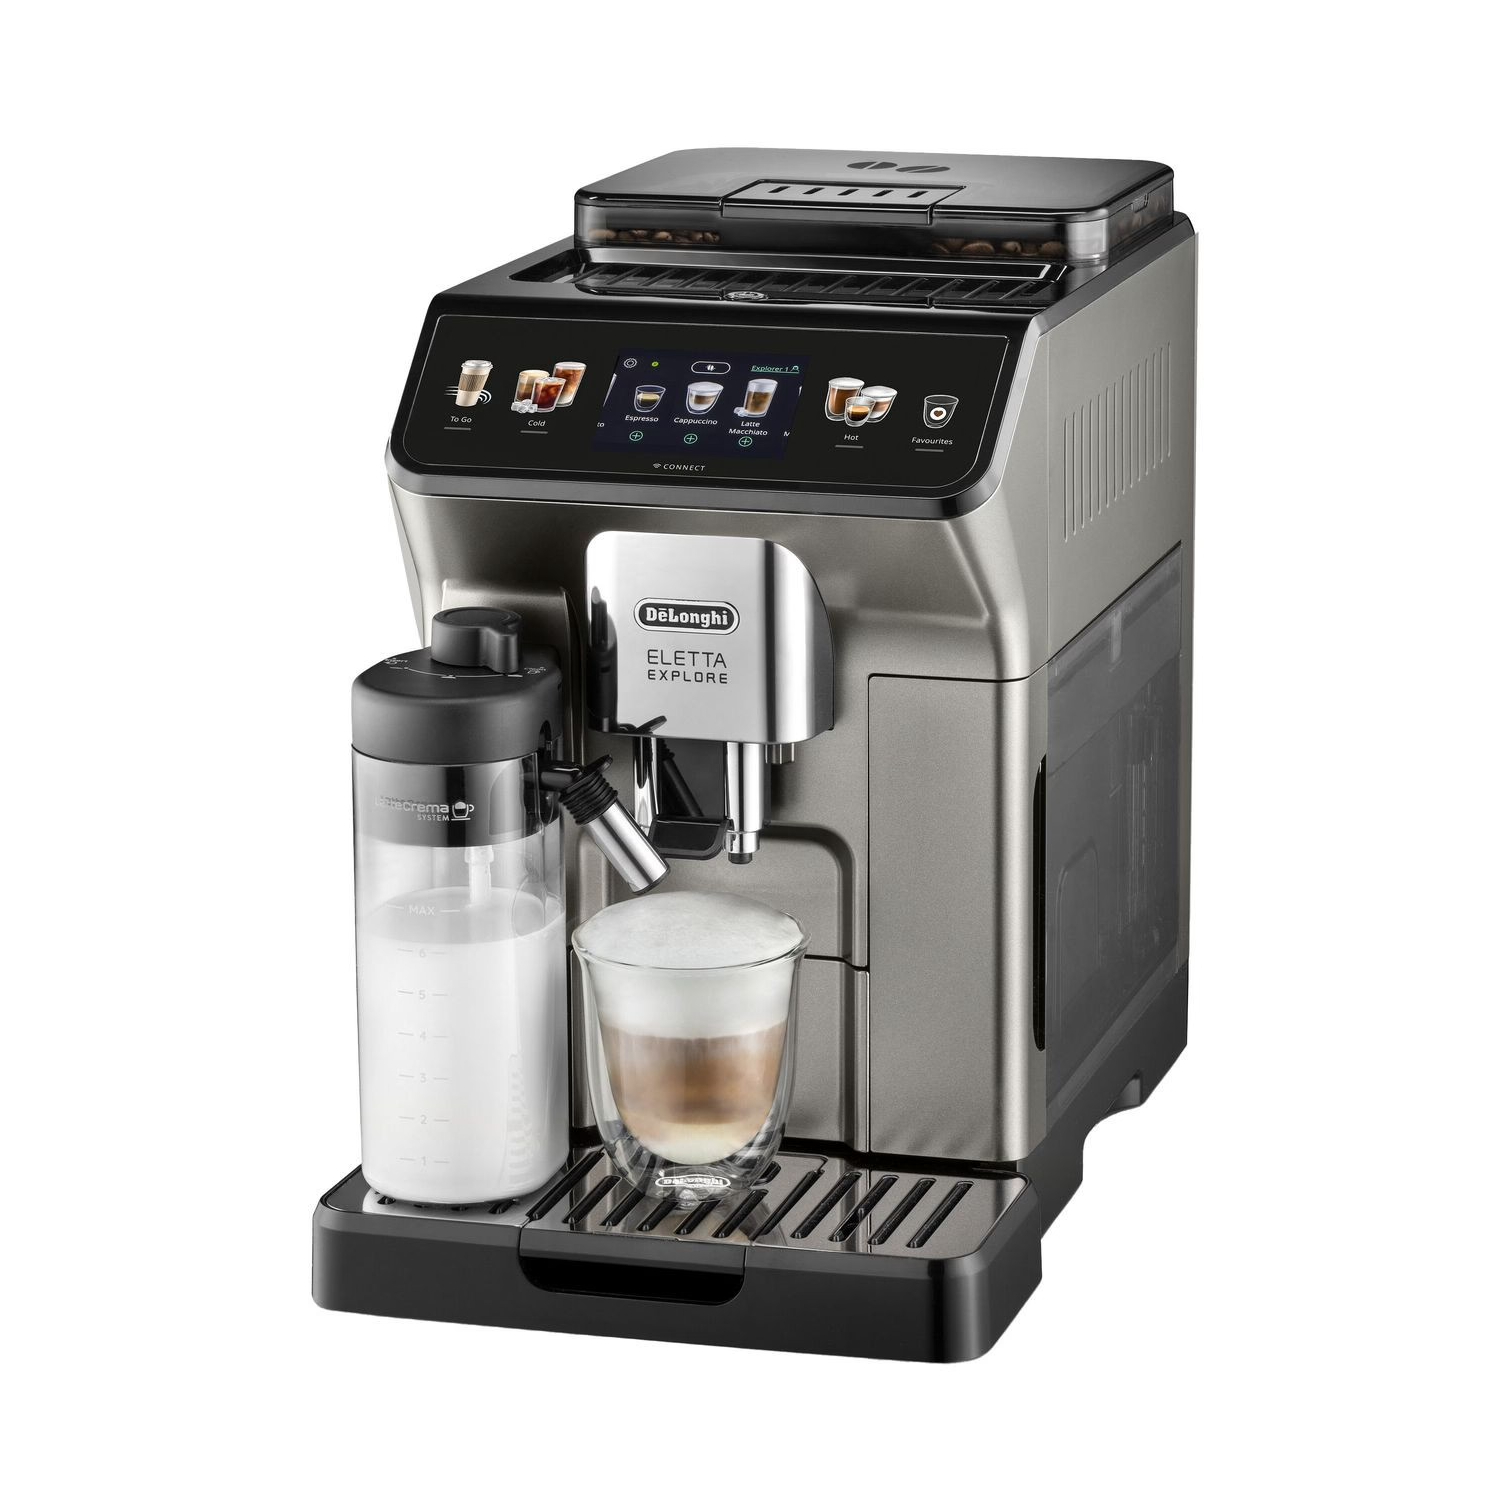 Автоматическая кофемашина DeLonghi Eletta Explore ECAM450.76.T, серебристый/черный горячие напитки с вином